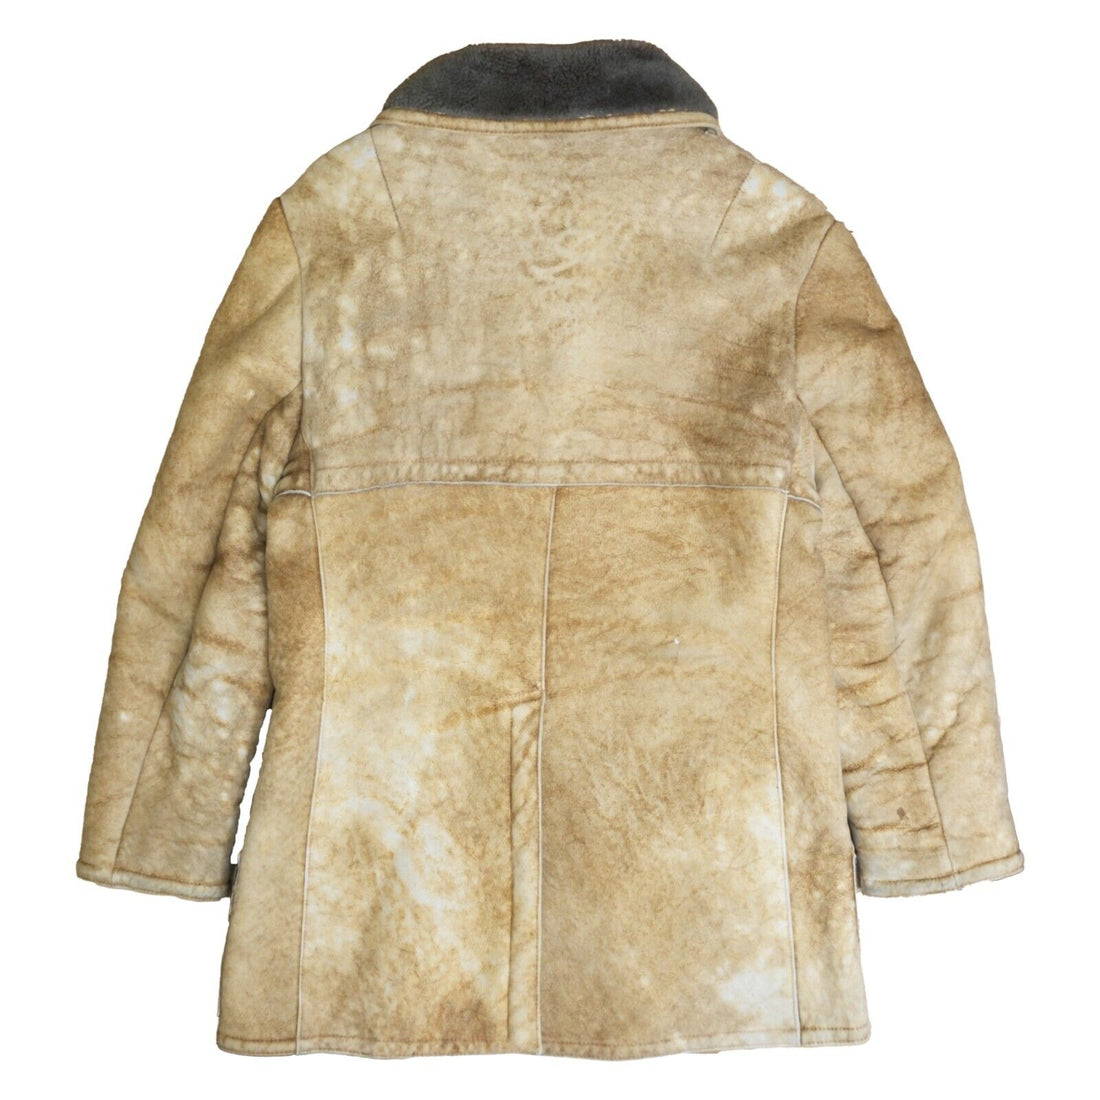 Vintage Sawyer Of Napa Spring Lamb Parka Coat Jacket Women Size 44